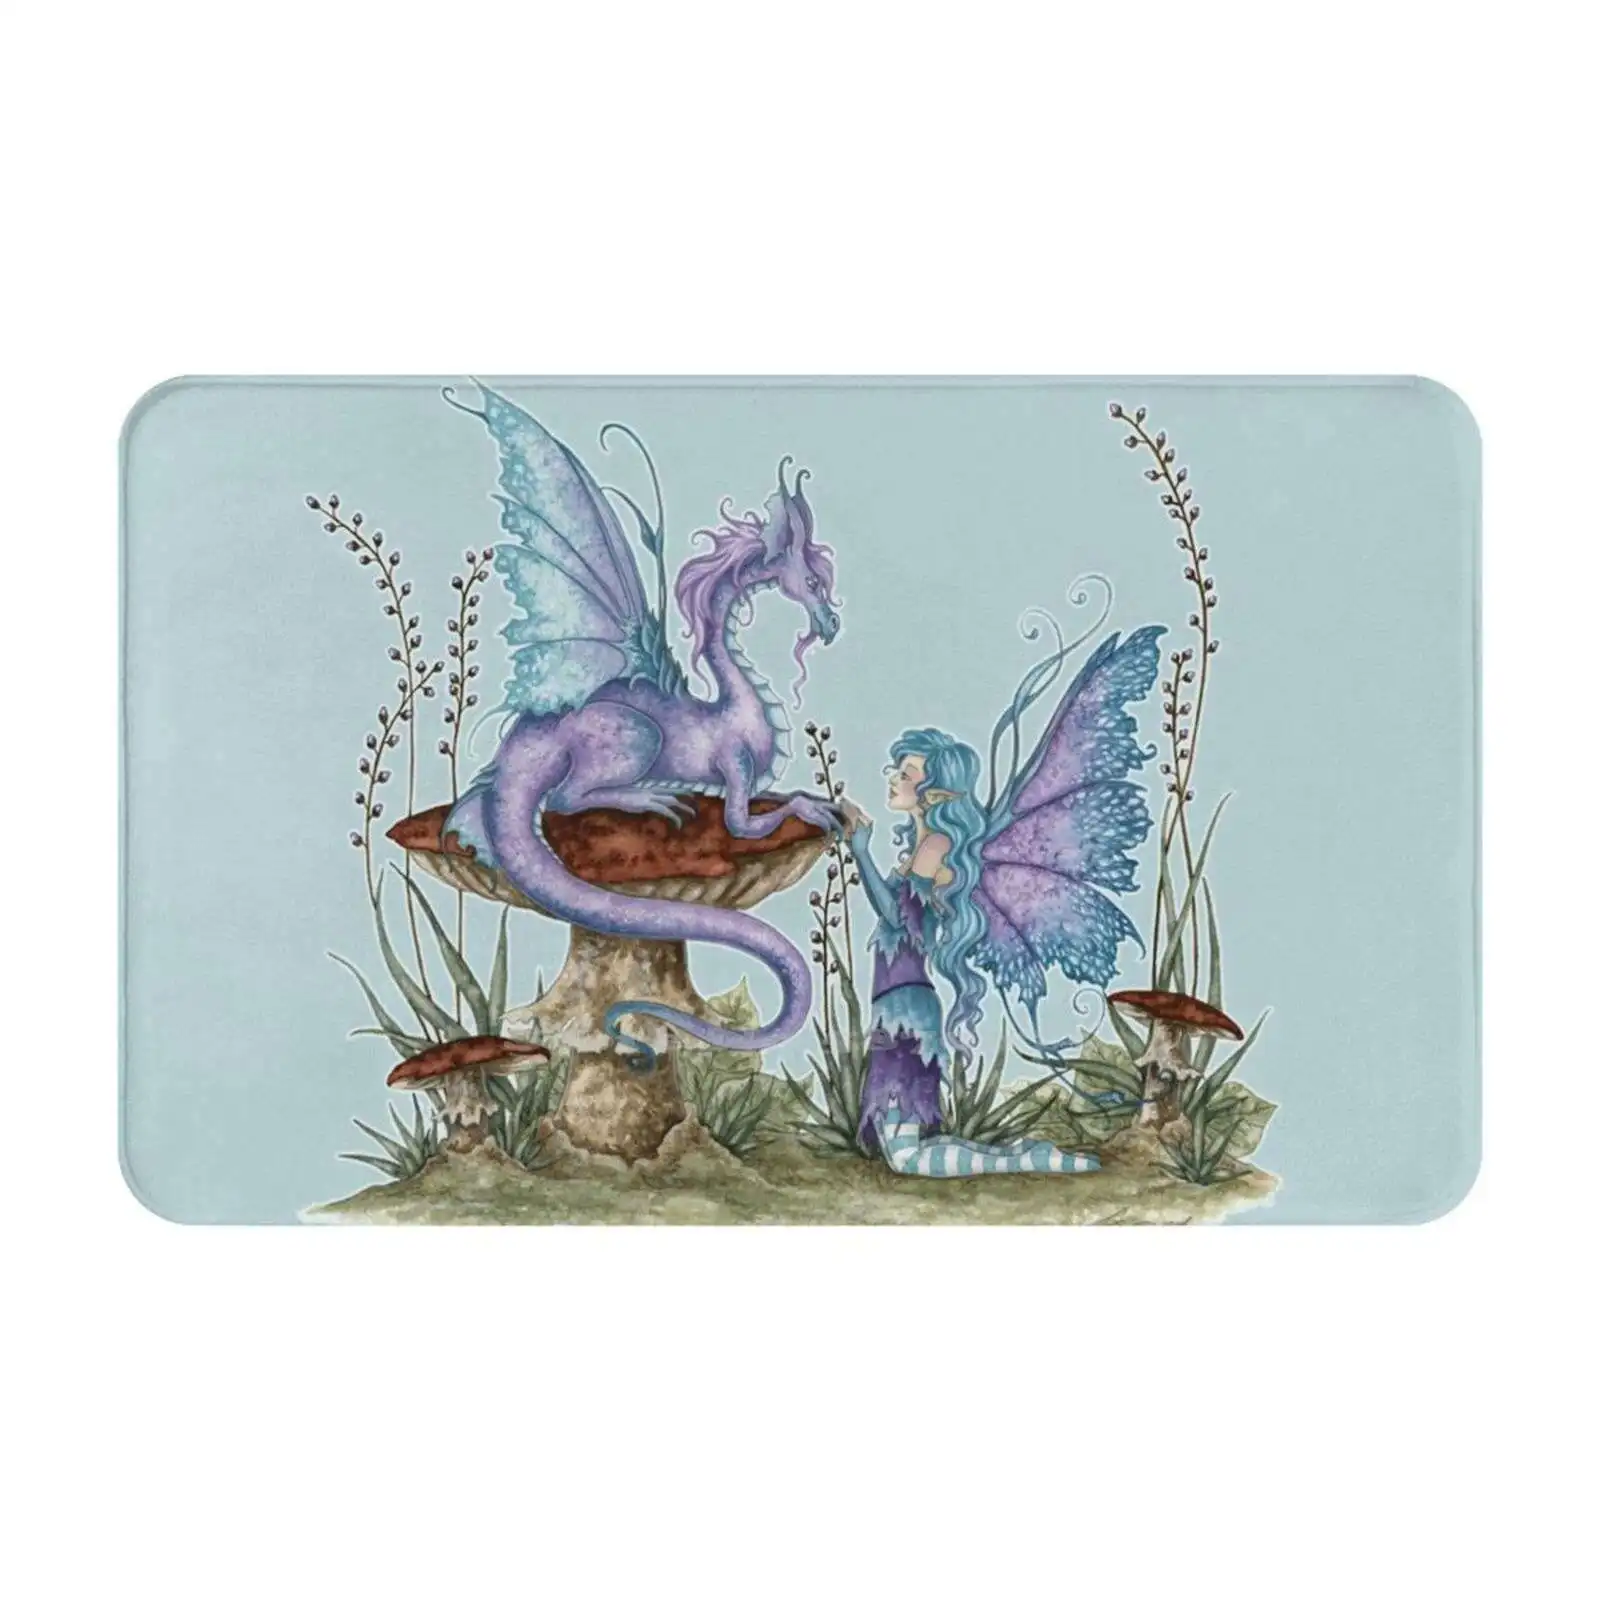 Мягкий домашний семейный противоскользящий коврик, ковер, Дружба с волшебным драконом, Эми Браун, гриб, поганка, фиолетовый, синий